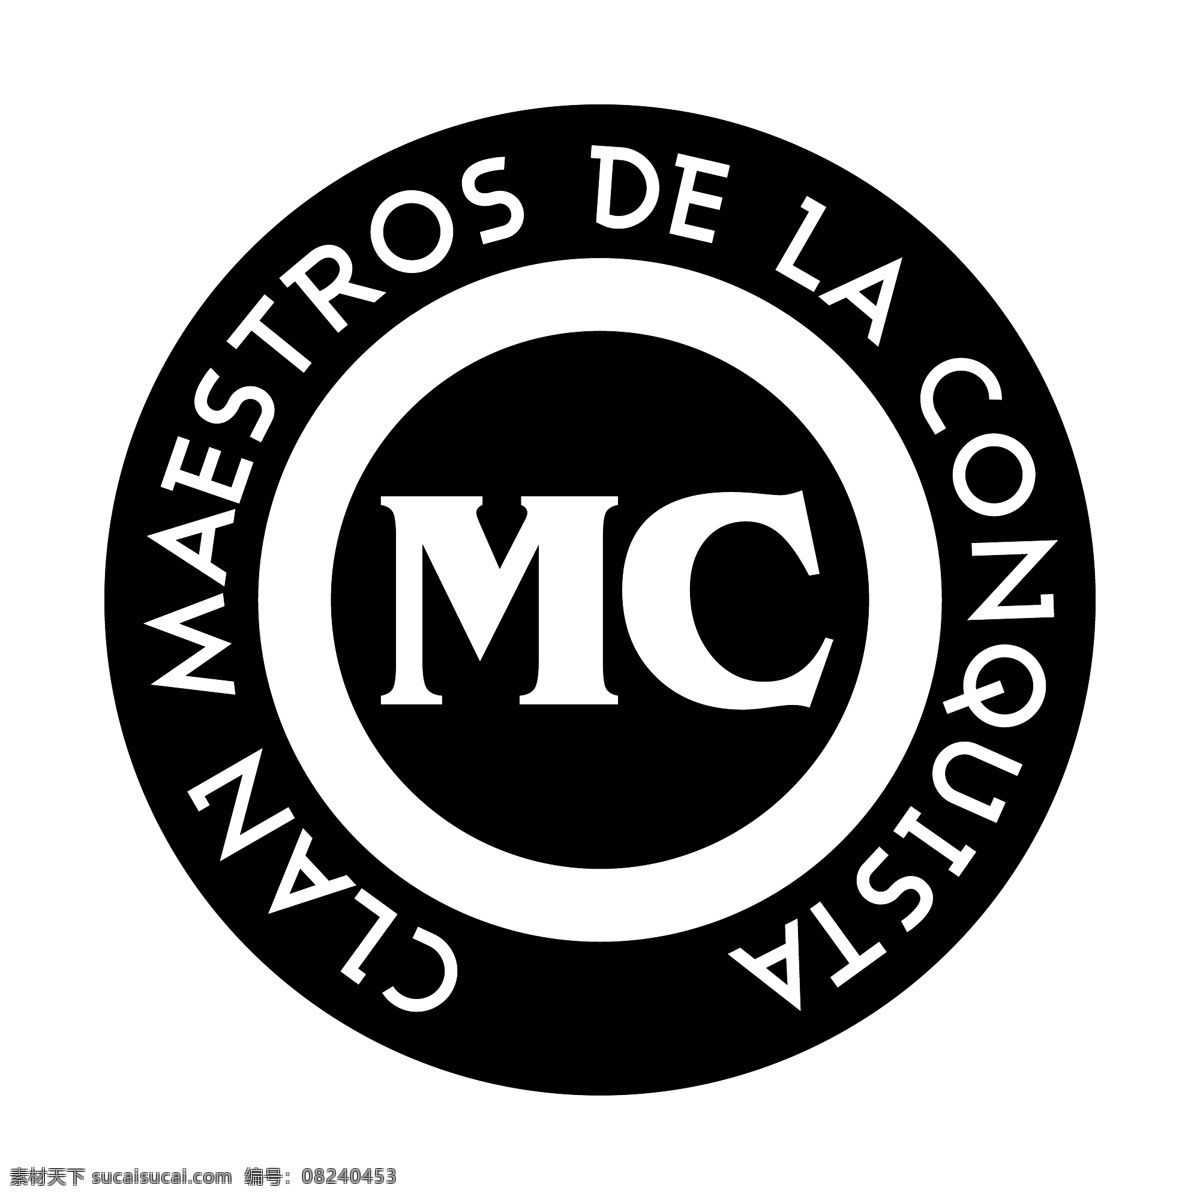 氏族的mc mc 氏族 免费矢量mc mc的图形 向量mc mc办公室 向量 向量免费下载 mc矢量标志 mc艺术标志 商标的mc mc标志设计 上面 免费 矢量 图形 建筑家居